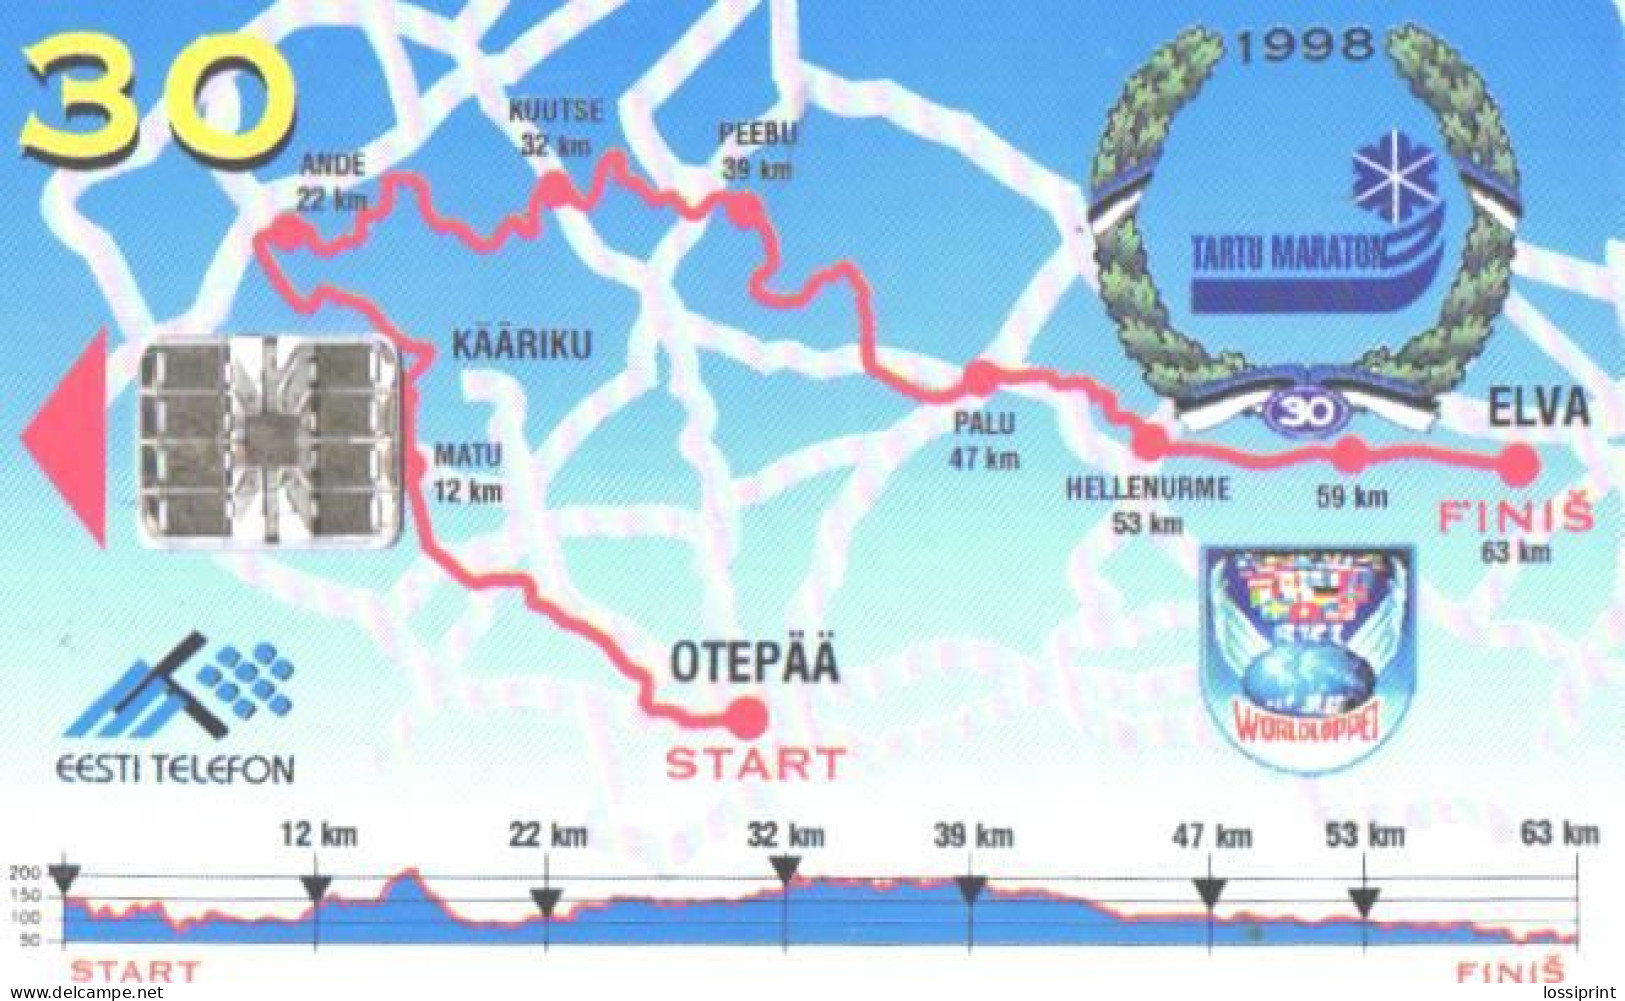 Estonia:Used Phonecard, Eesti Telefon, 30 EEK, Tartu Marathon, Skiing Competition, 1998 - Sport